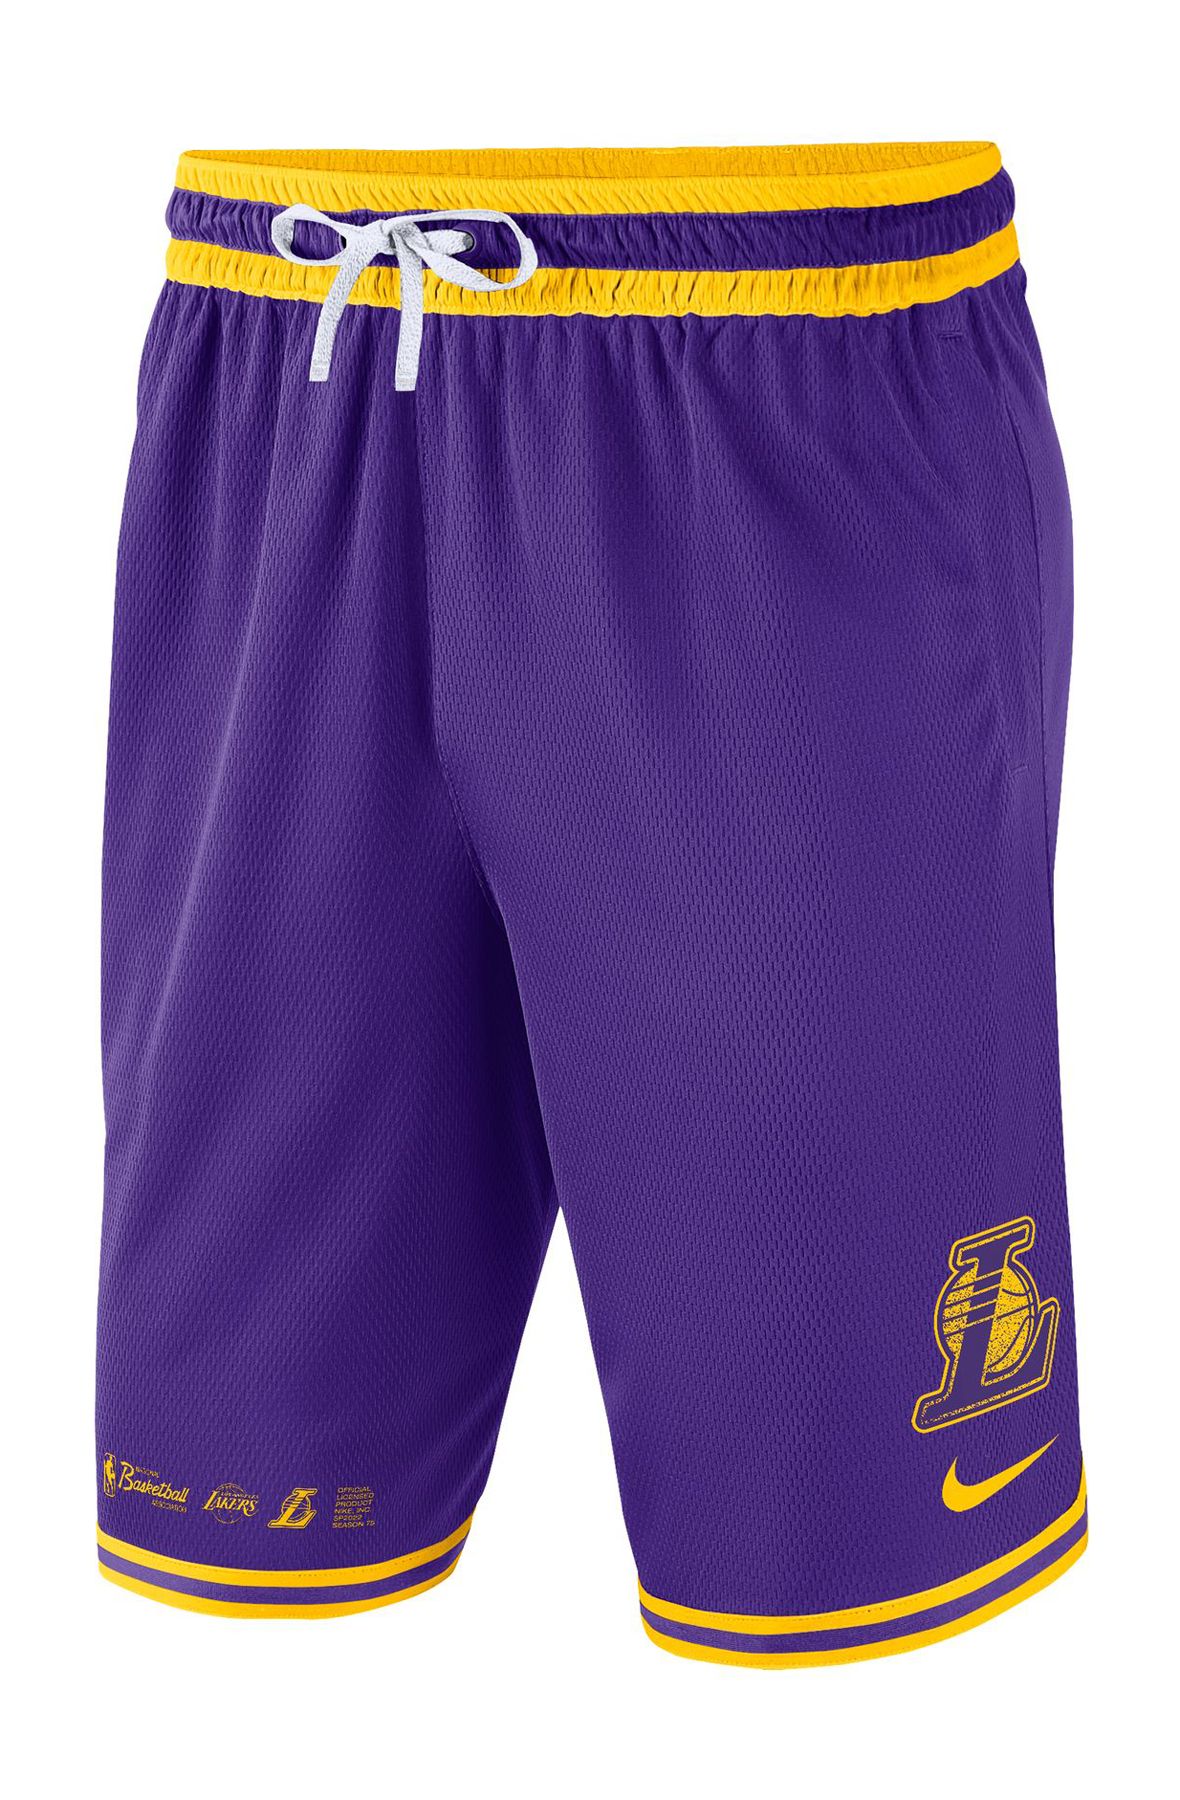 NIKE Los Angeles Lakers DNA Dri-FIT NBA Shorts DH9175 504 - Shiekh